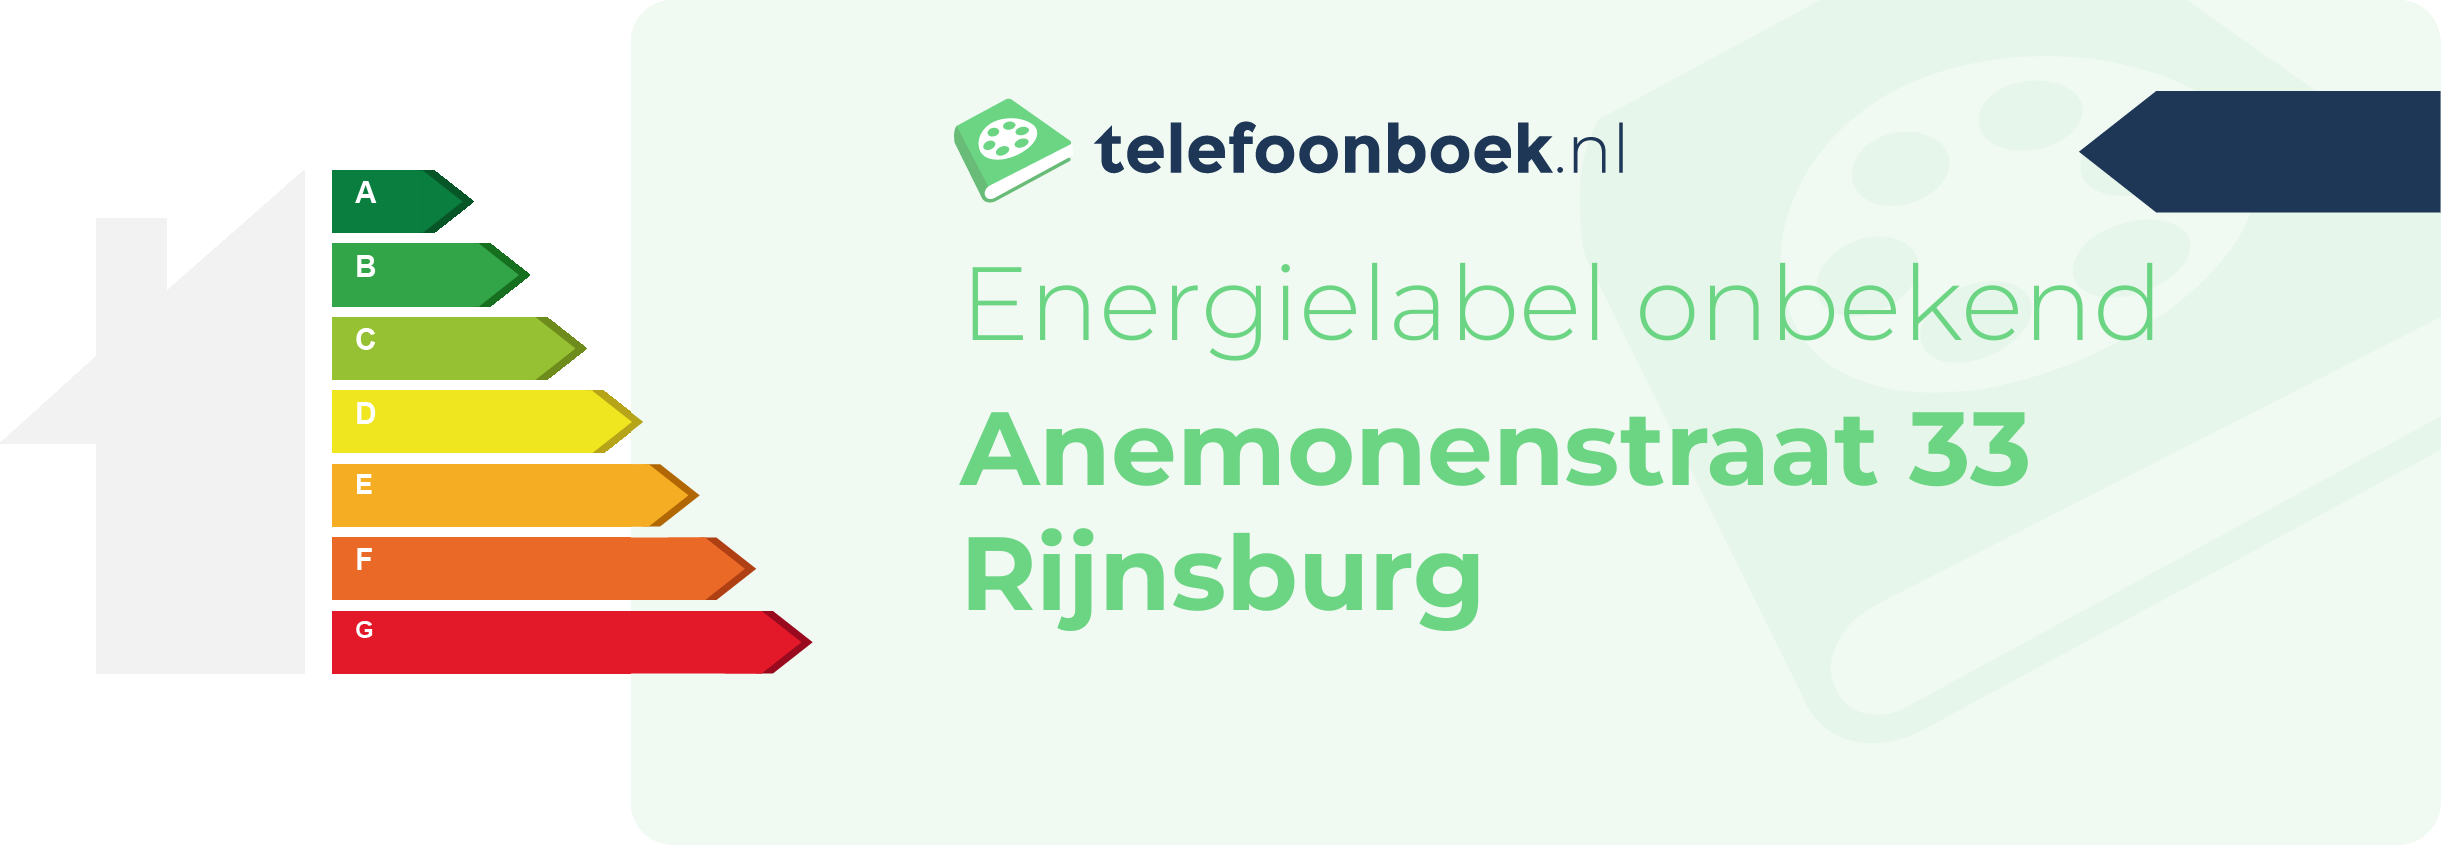 Energielabel Anemonenstraat 33 Rijnsburg